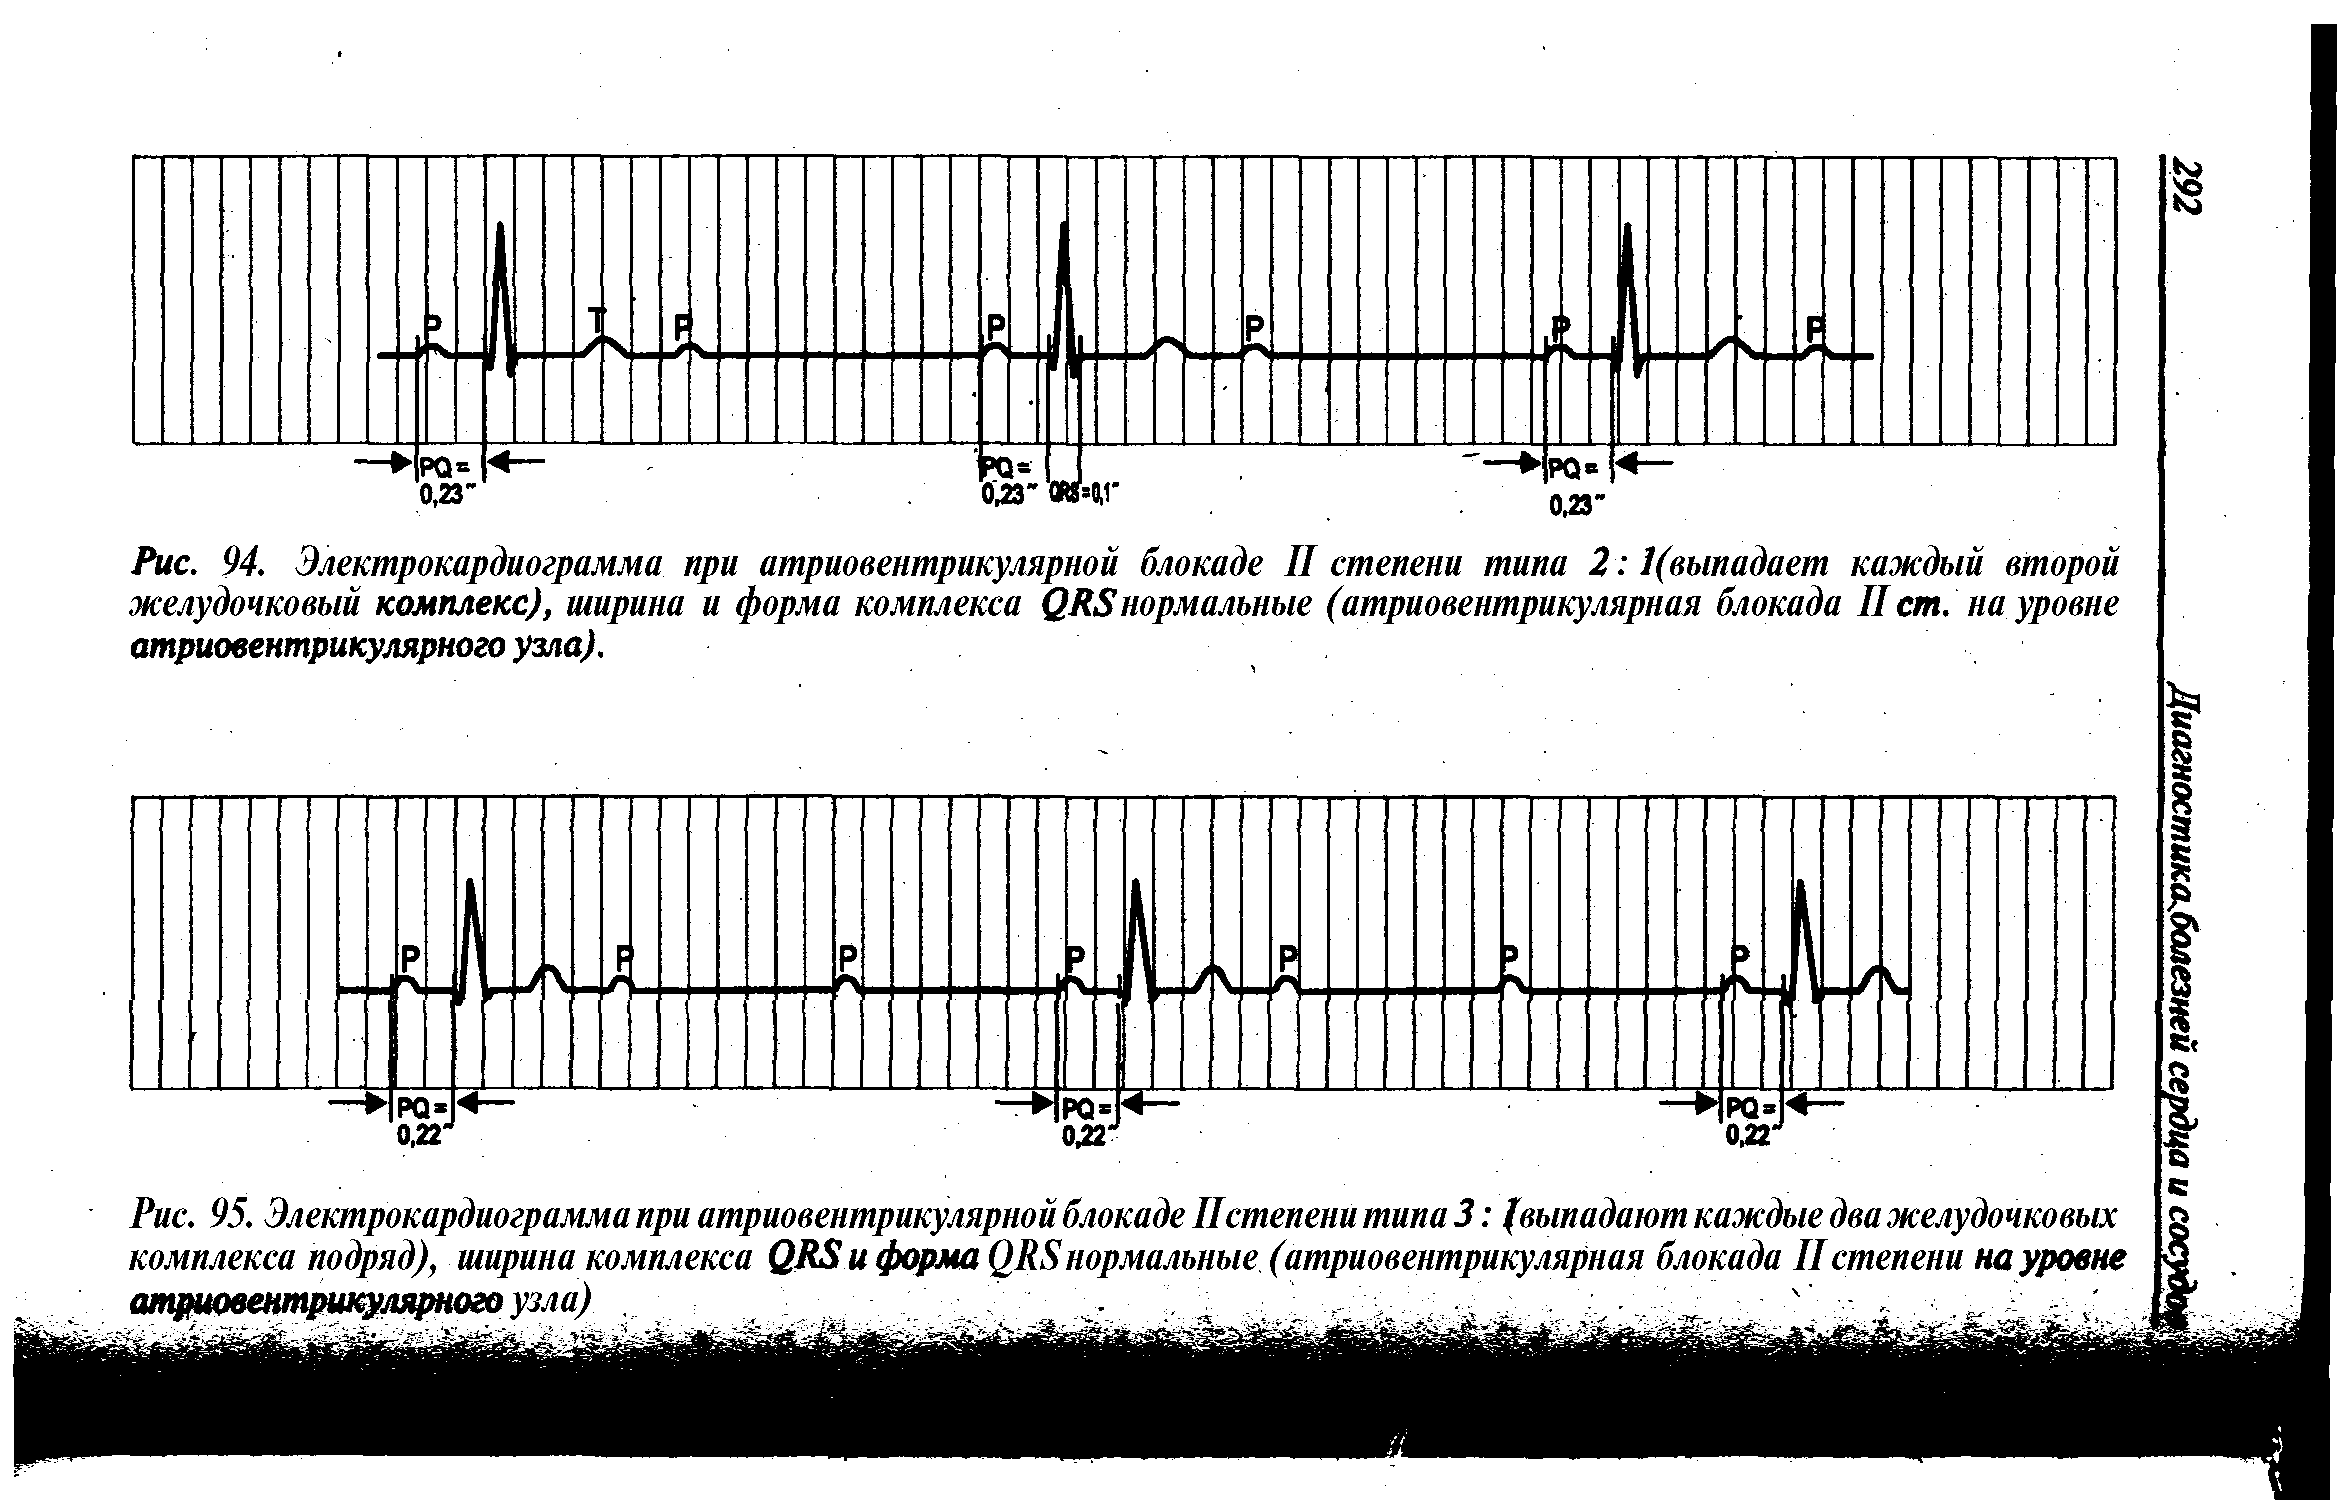 Рис. 95. Электрокардиограмма при атриовентрикулярной блокаде IIстепени типа 3 (выпадают каждые два желудочковых комплекса подряд), ширина комплекса QRS и форма QRSнормальные (атриовентрикулярная блокада IIстепени на уровне атриовентрикулярного узла) ...